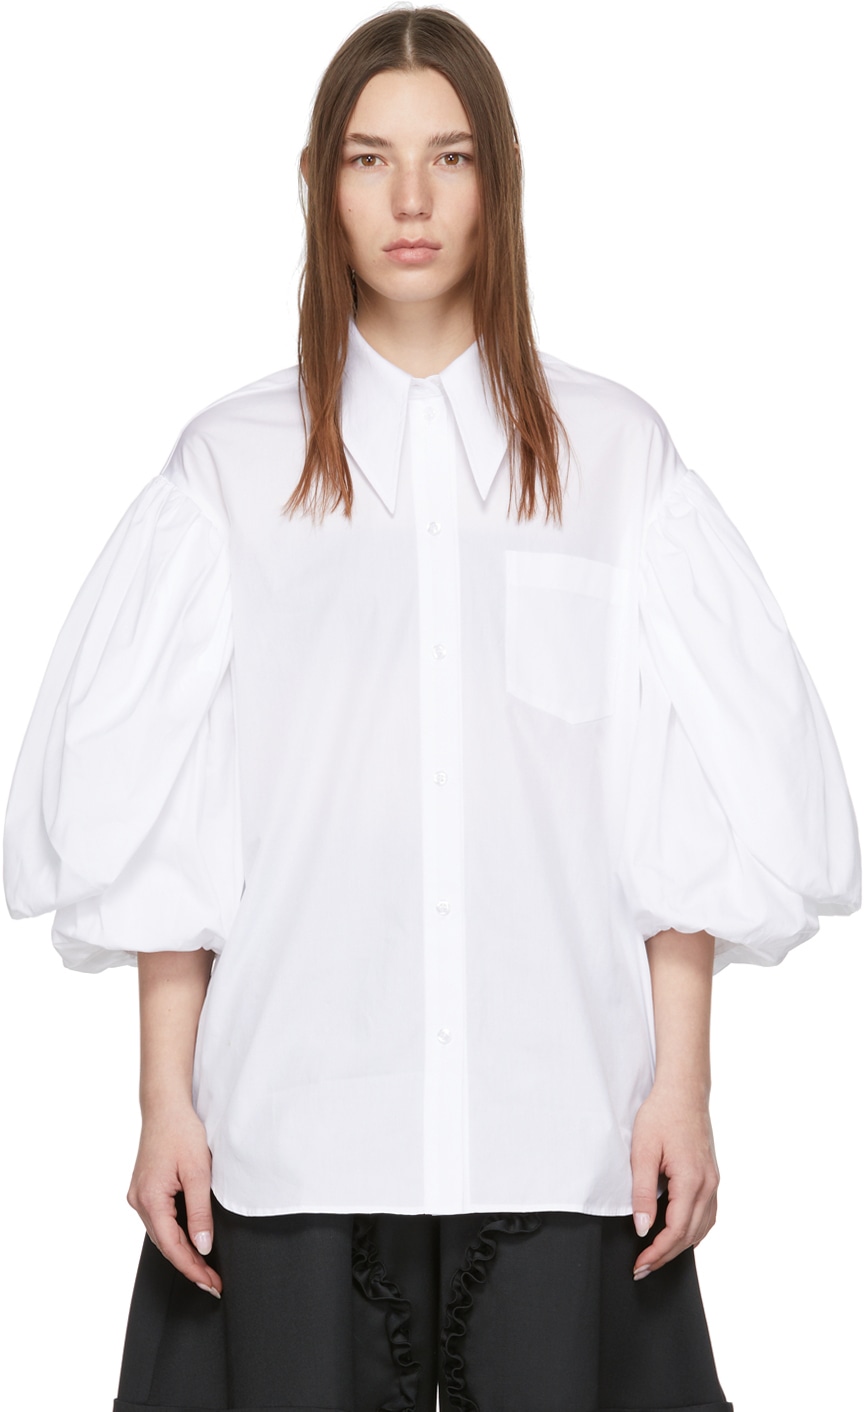 https://img.ssensemedia.com/images/b_white,g_center,f_auto,q_auto:best/221405F109003_1/simone-rocha-white-pointed-collar-shirt.jpg